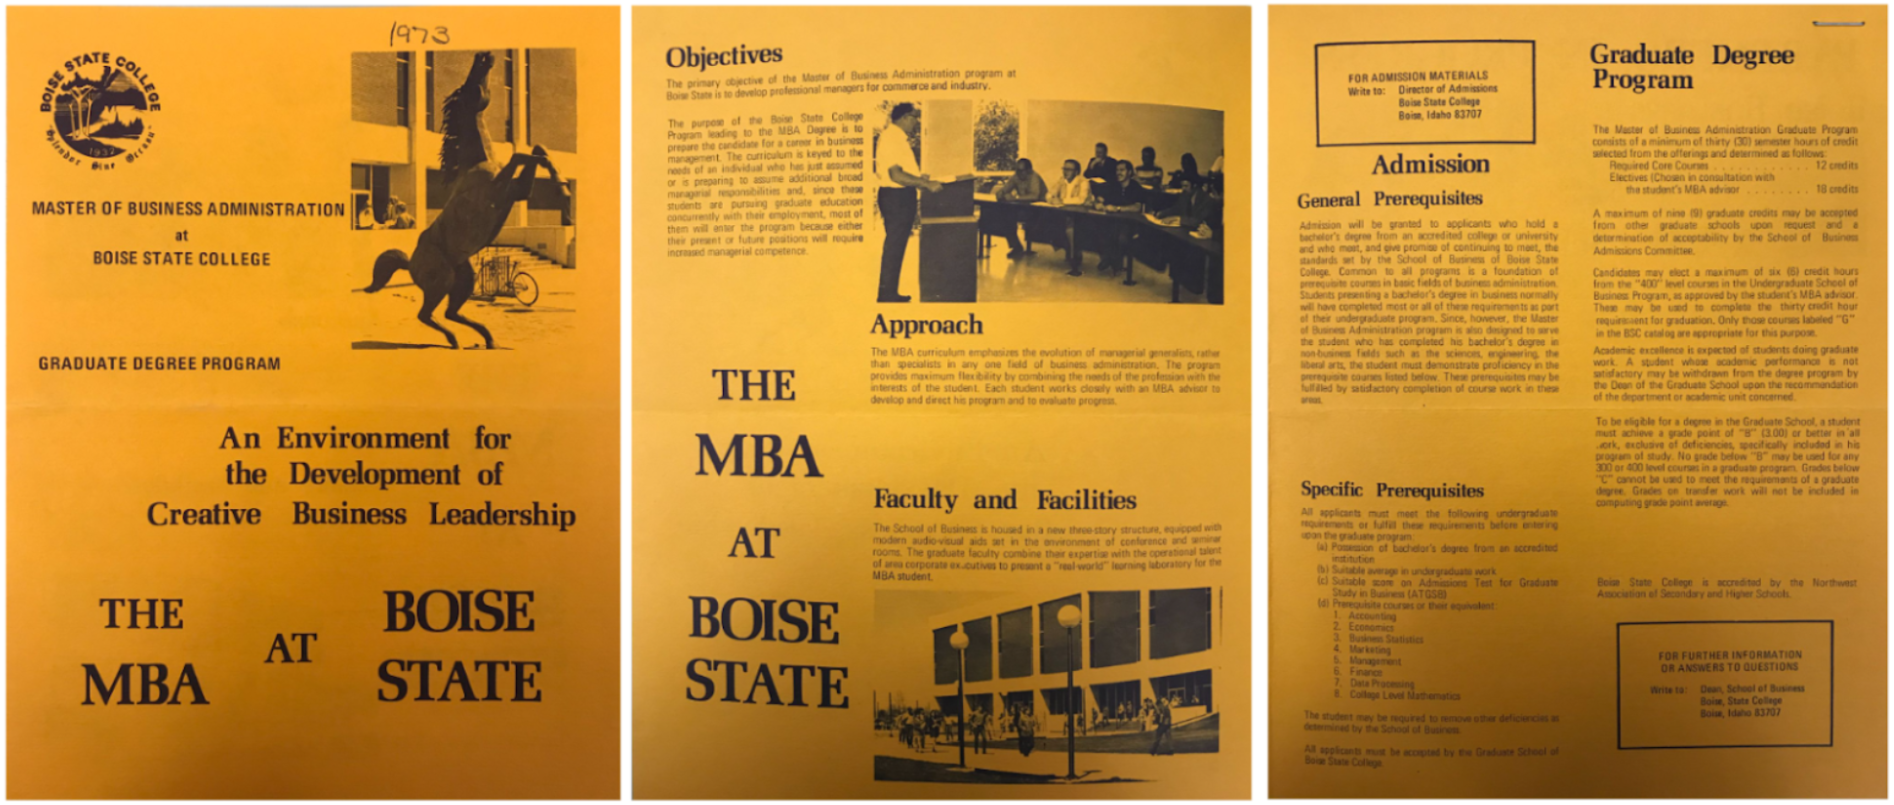 1973 MBA flyer